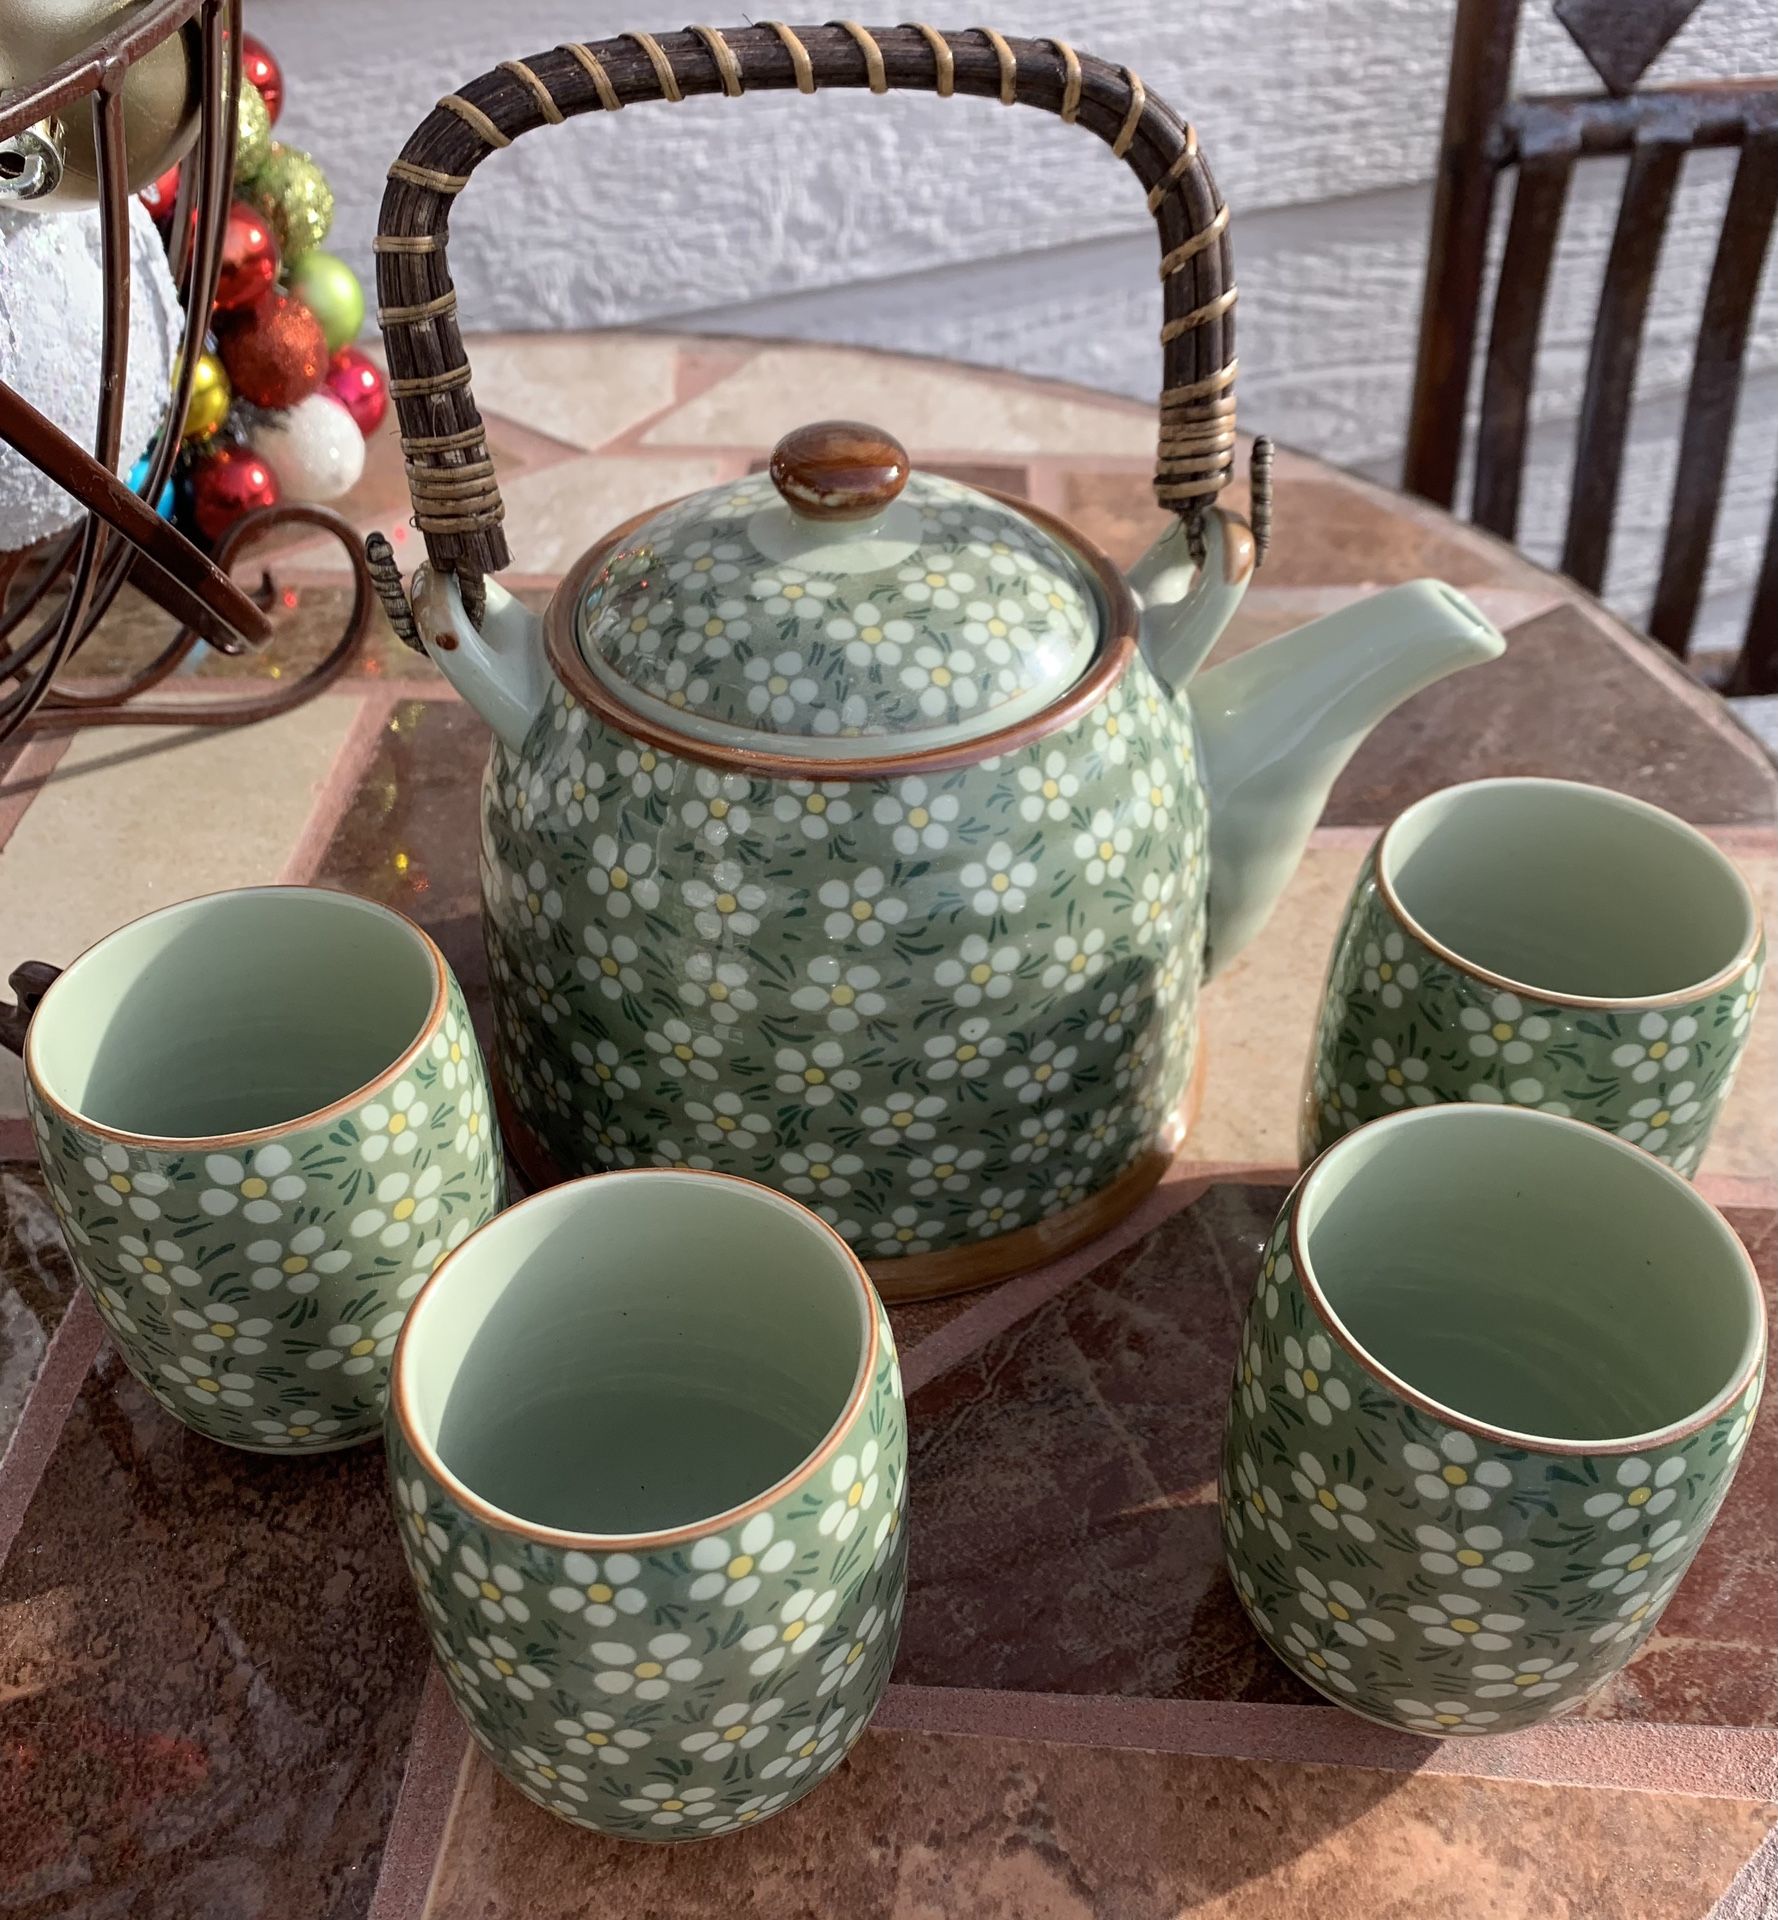 Daisy Flower Painting Tea Set - Tea Pot And 4 Tea Cups